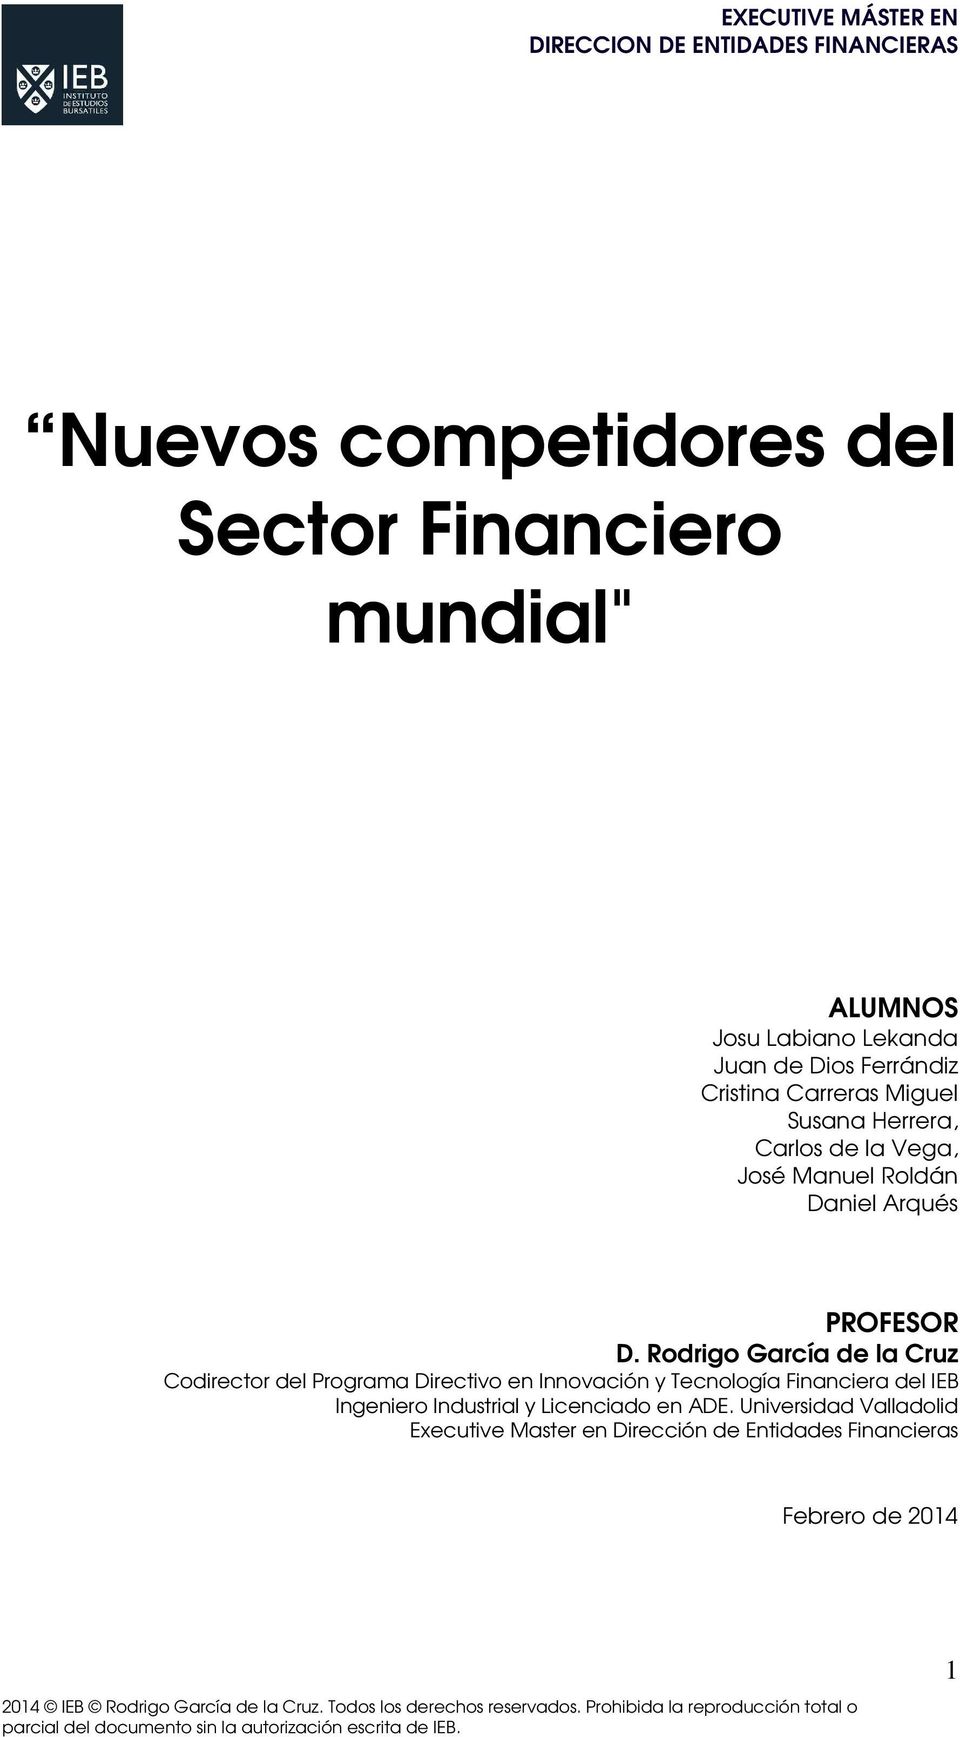 Rodrigo García de la Cruz Codirector del Programa Directivo en Innovación y Tecnología Financiera del IEB